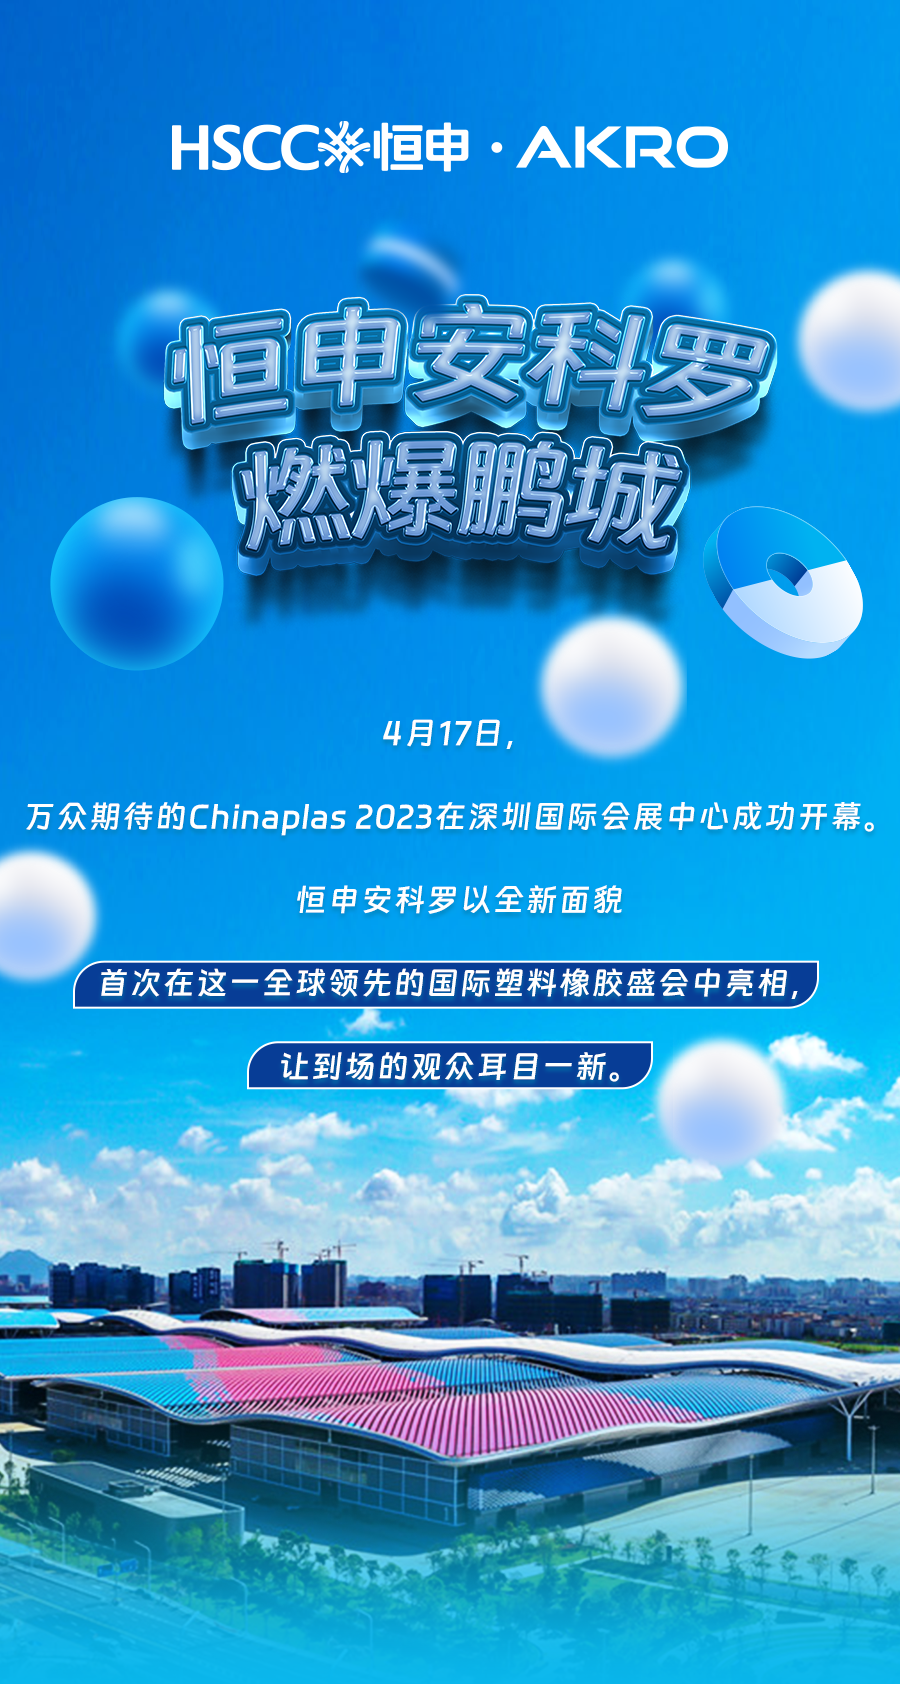 CHINAPLAS 2023丨恒申安科罗燃爆鹏城 可持续产品亮眼登场